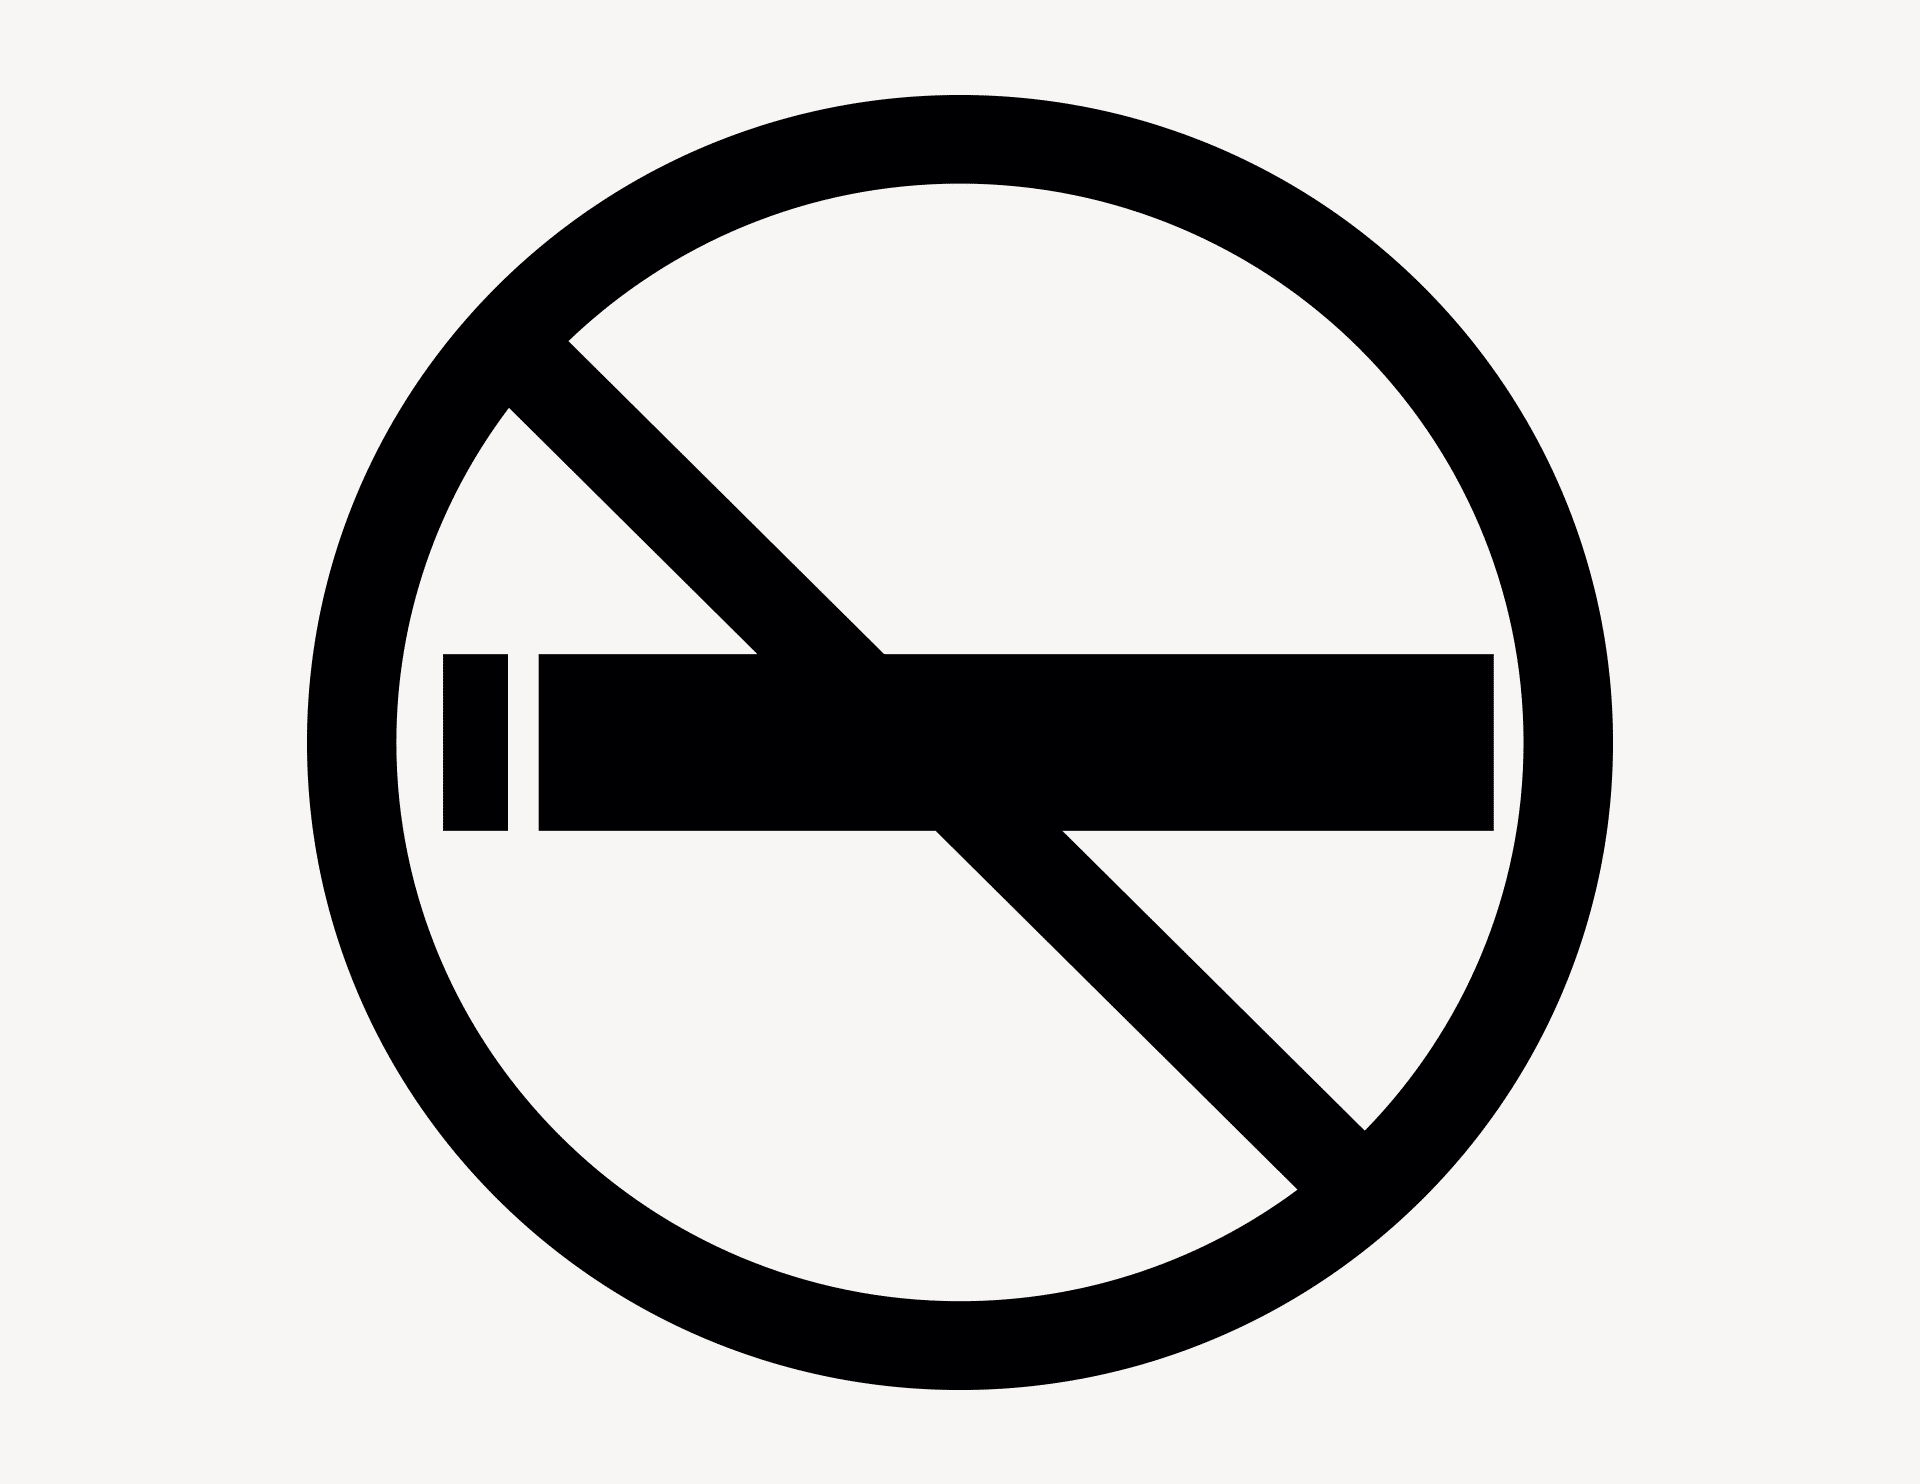 Rauchen verboten - Aufkleber für Gewerbe